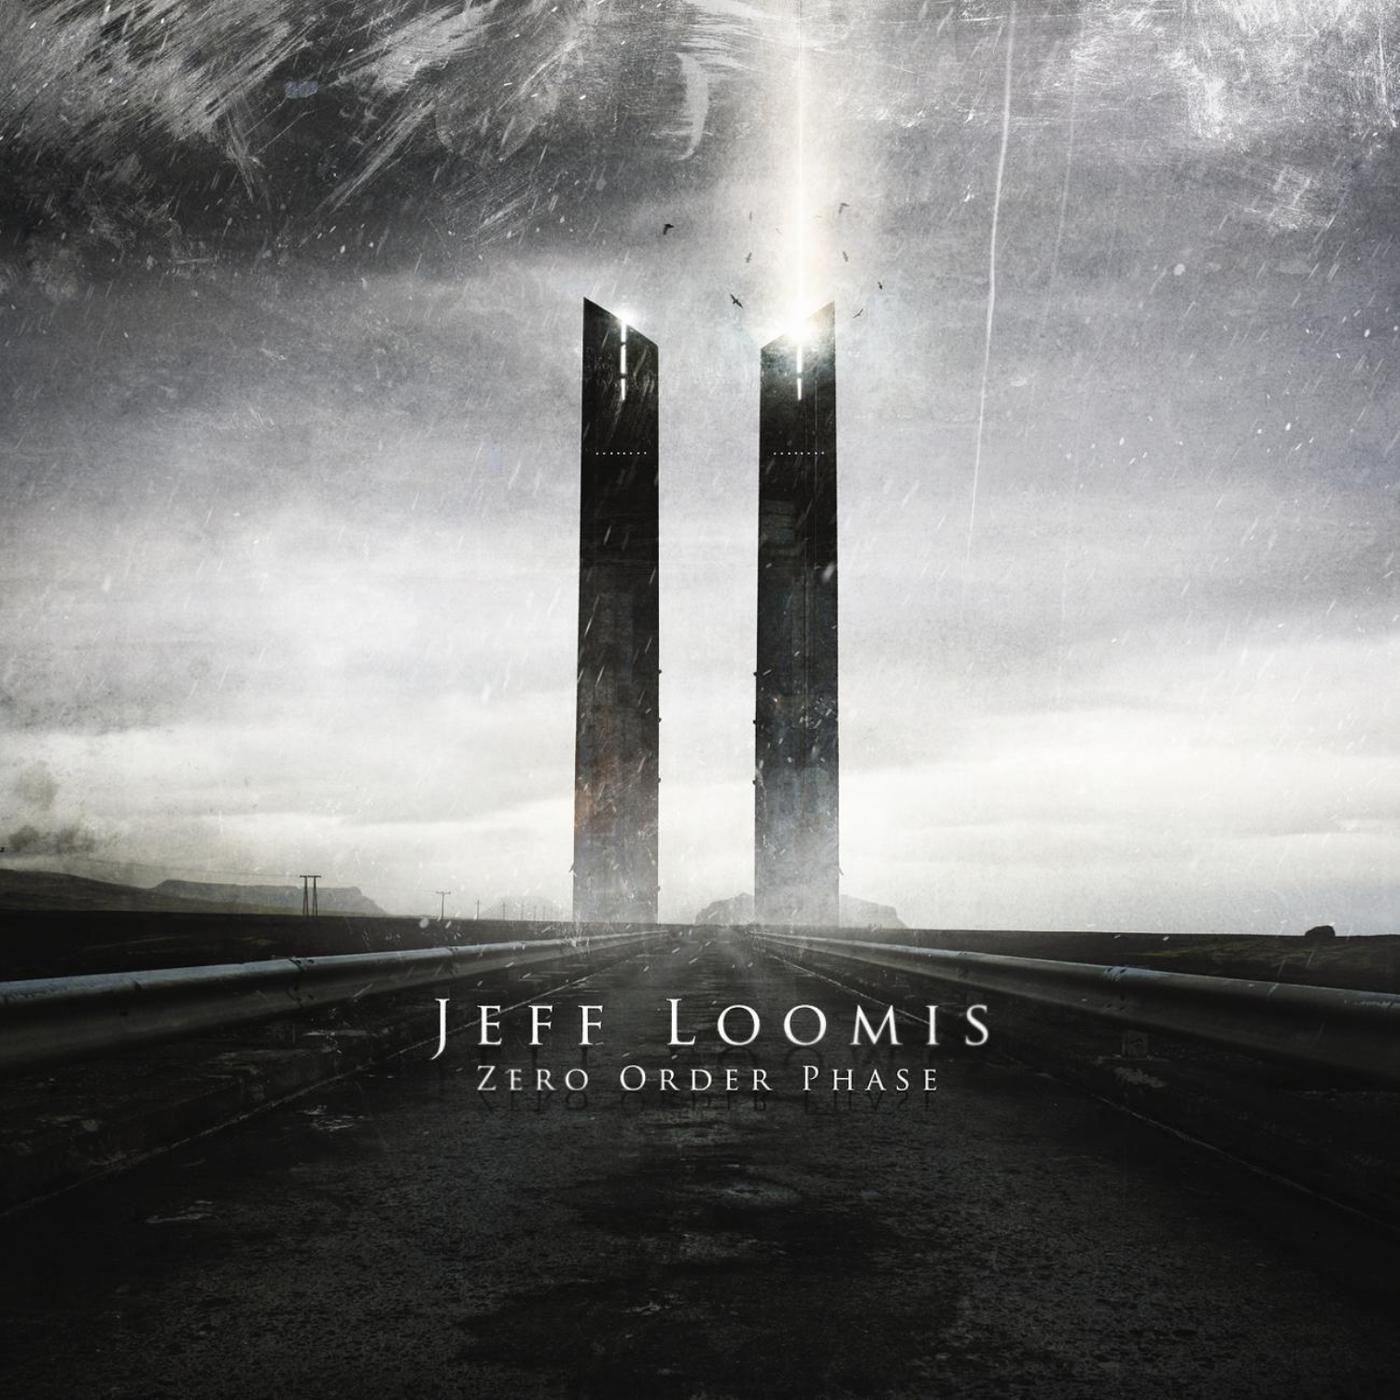 Jeff Loomis - Race against Disaster